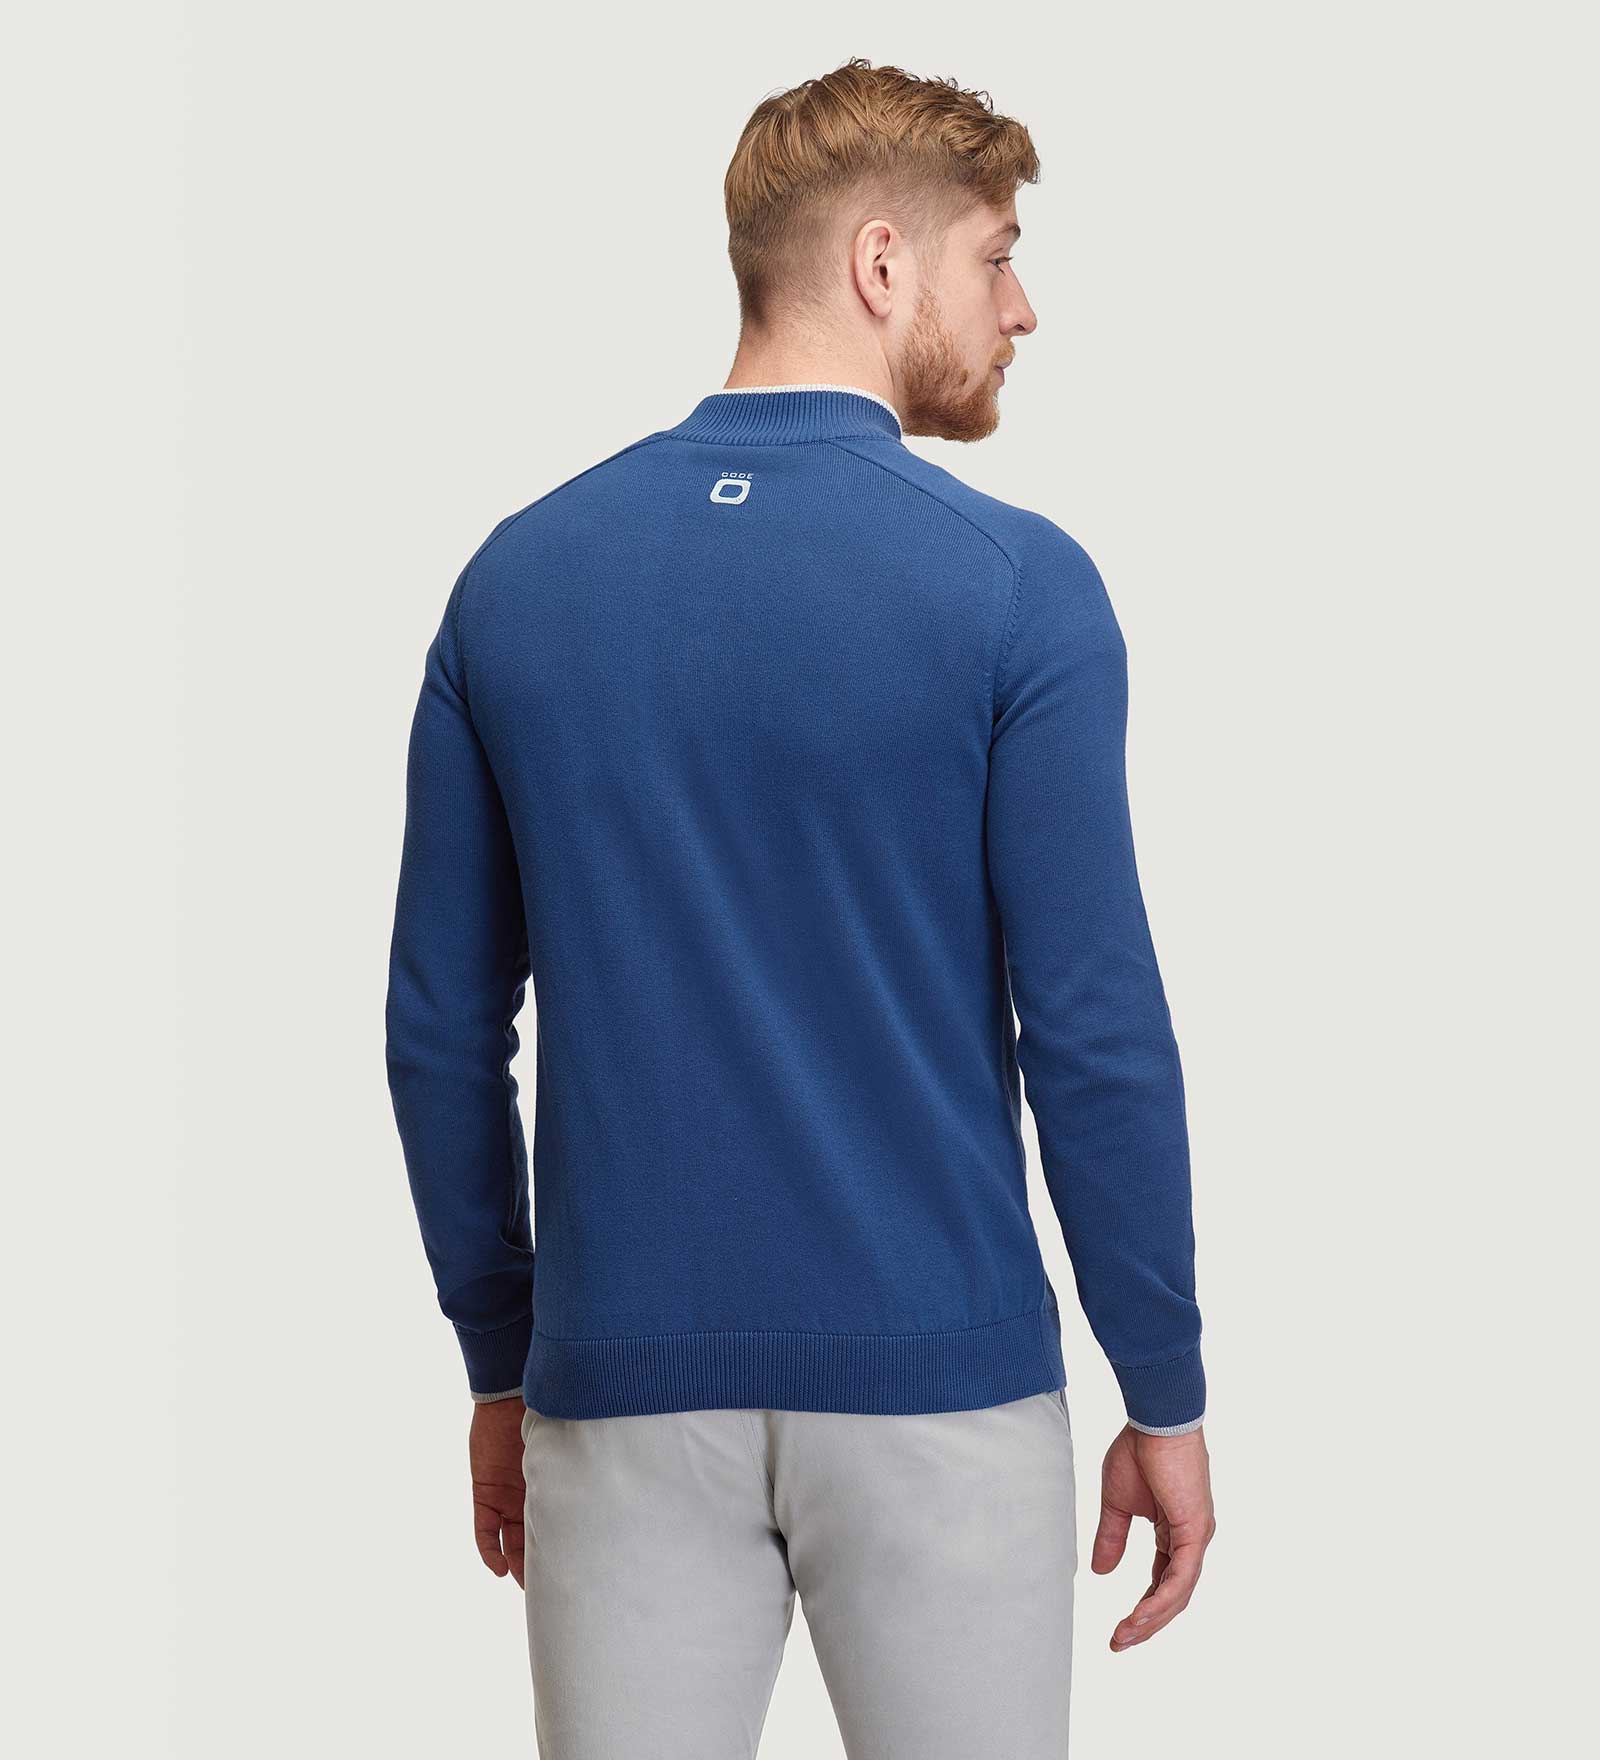 Half-Zip Sweater Navy Blue for Men 